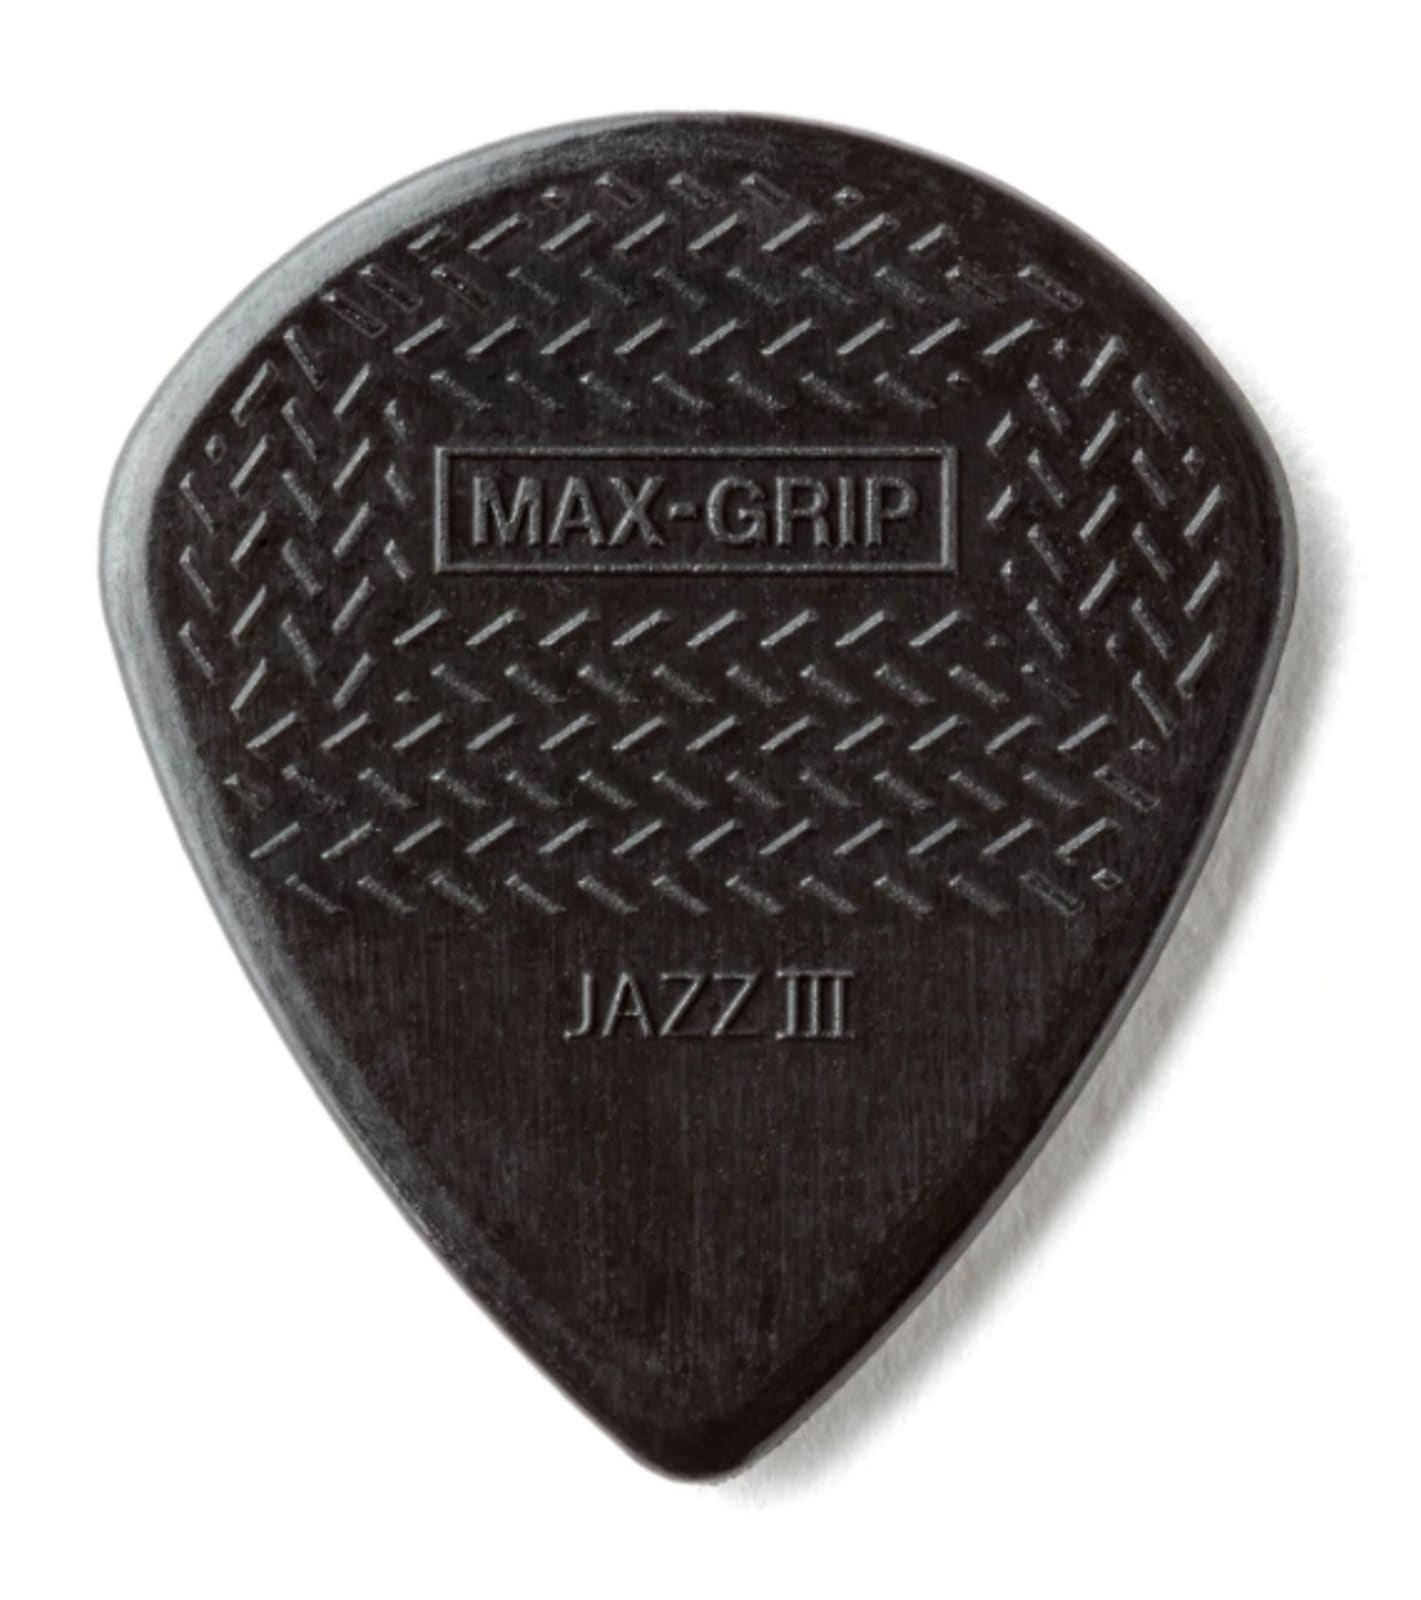 Dunlop Max-Grip Jazz III Stiffo Pick, 6-Pack